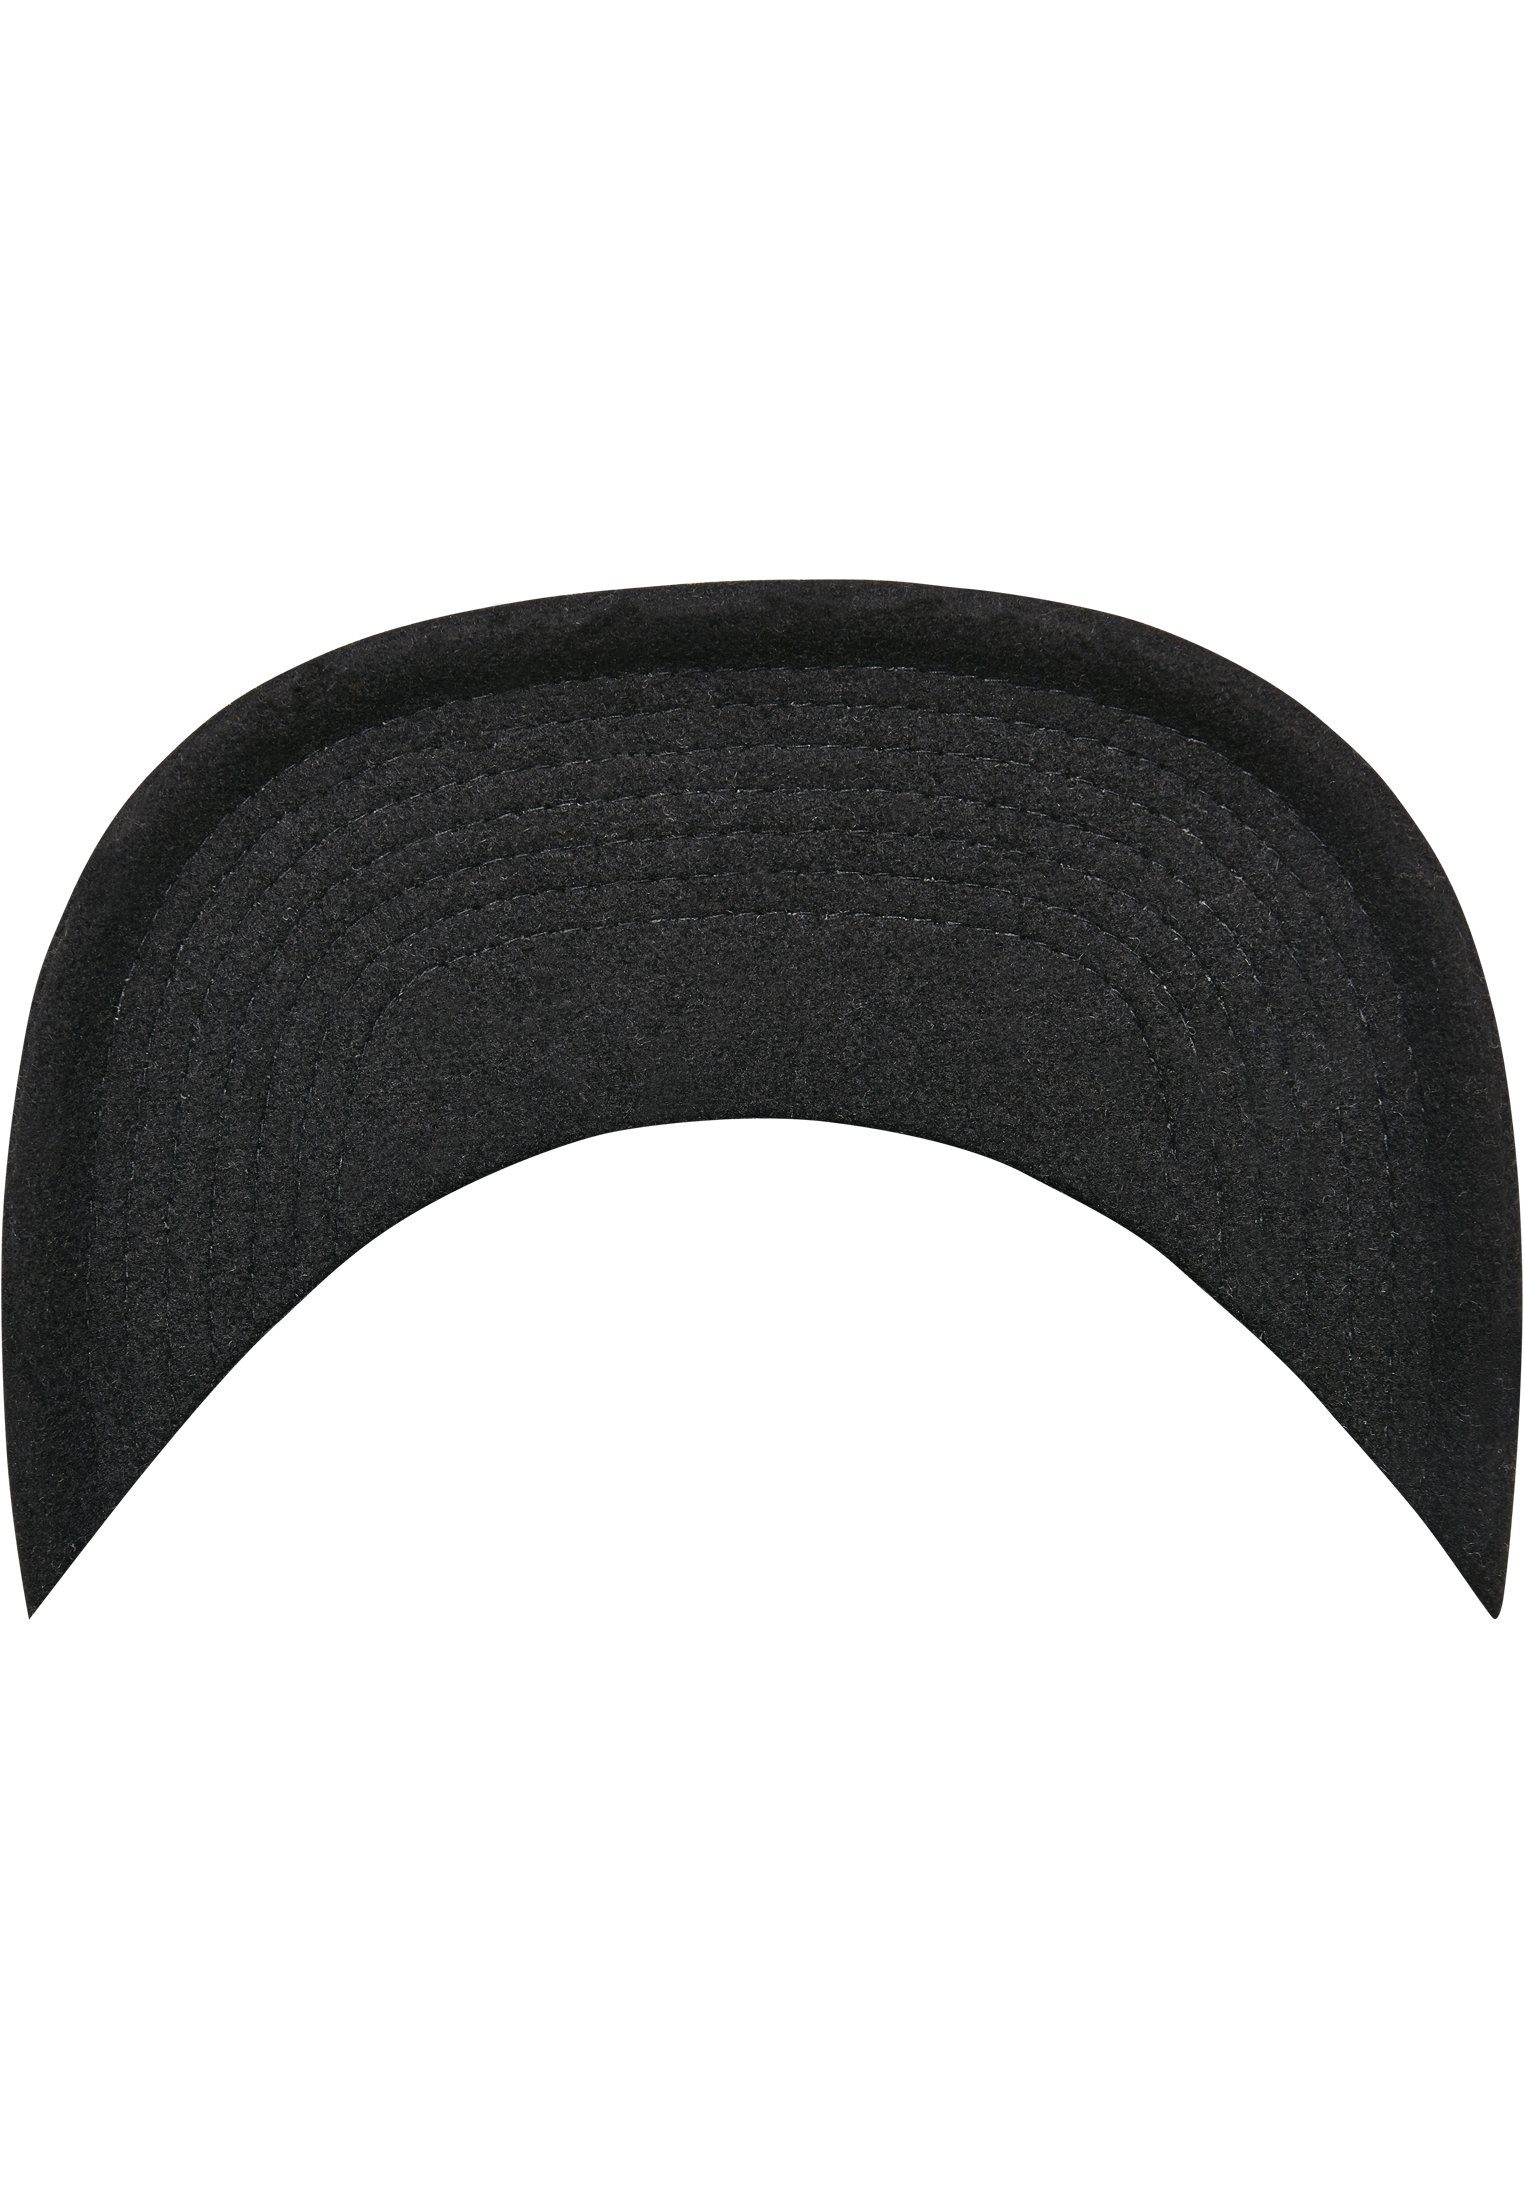 Melton Cap Flexfit Flex Snapback black Cap